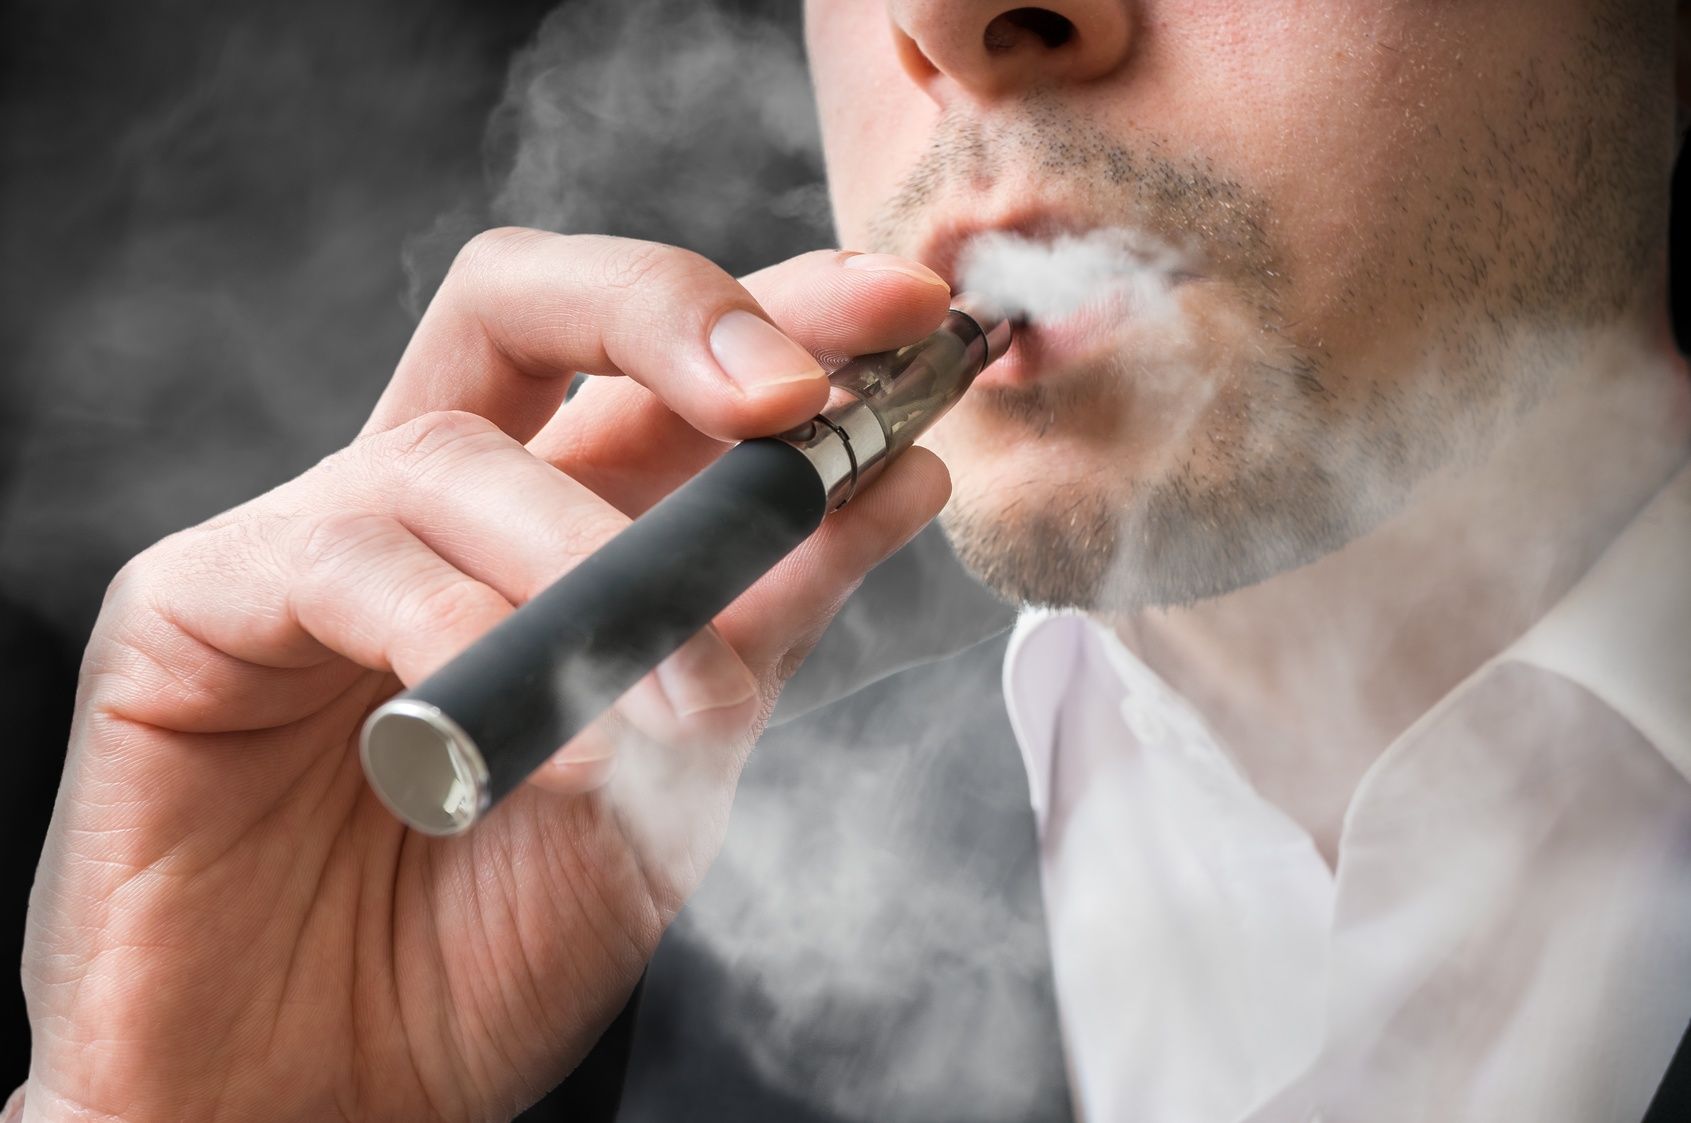 La cigarette électronique est-elle vraiment moins dangereuse que le tabac?